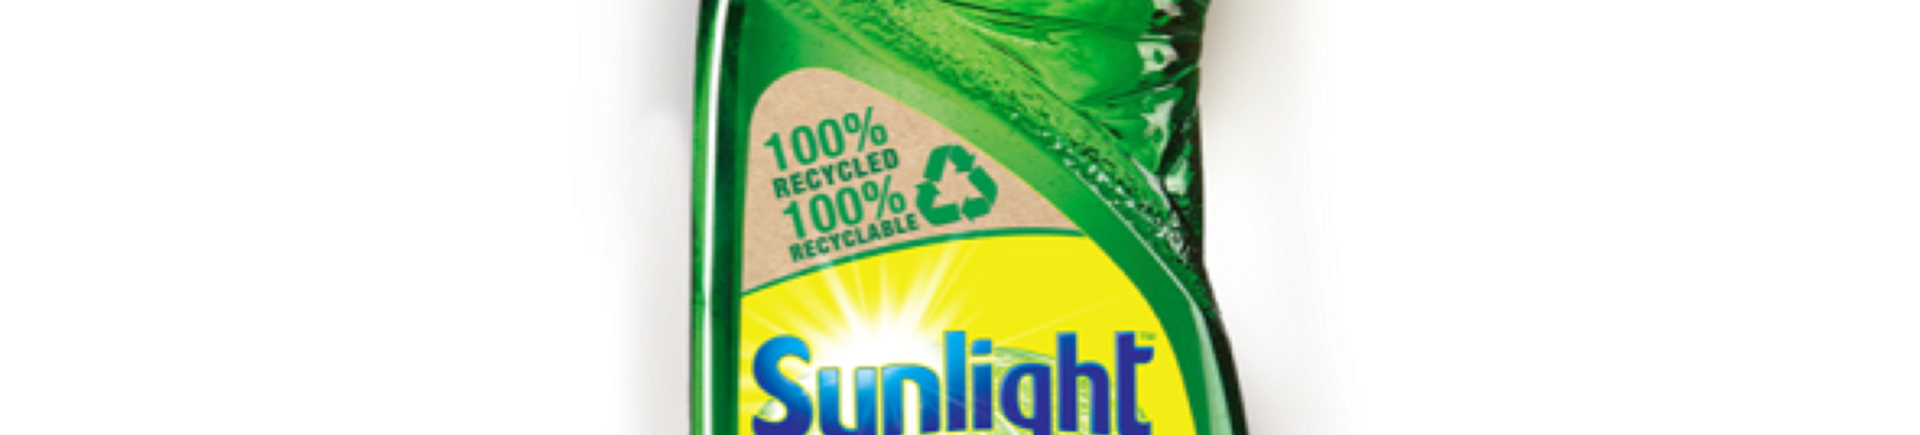 Sunlight Dishwashing Liquid